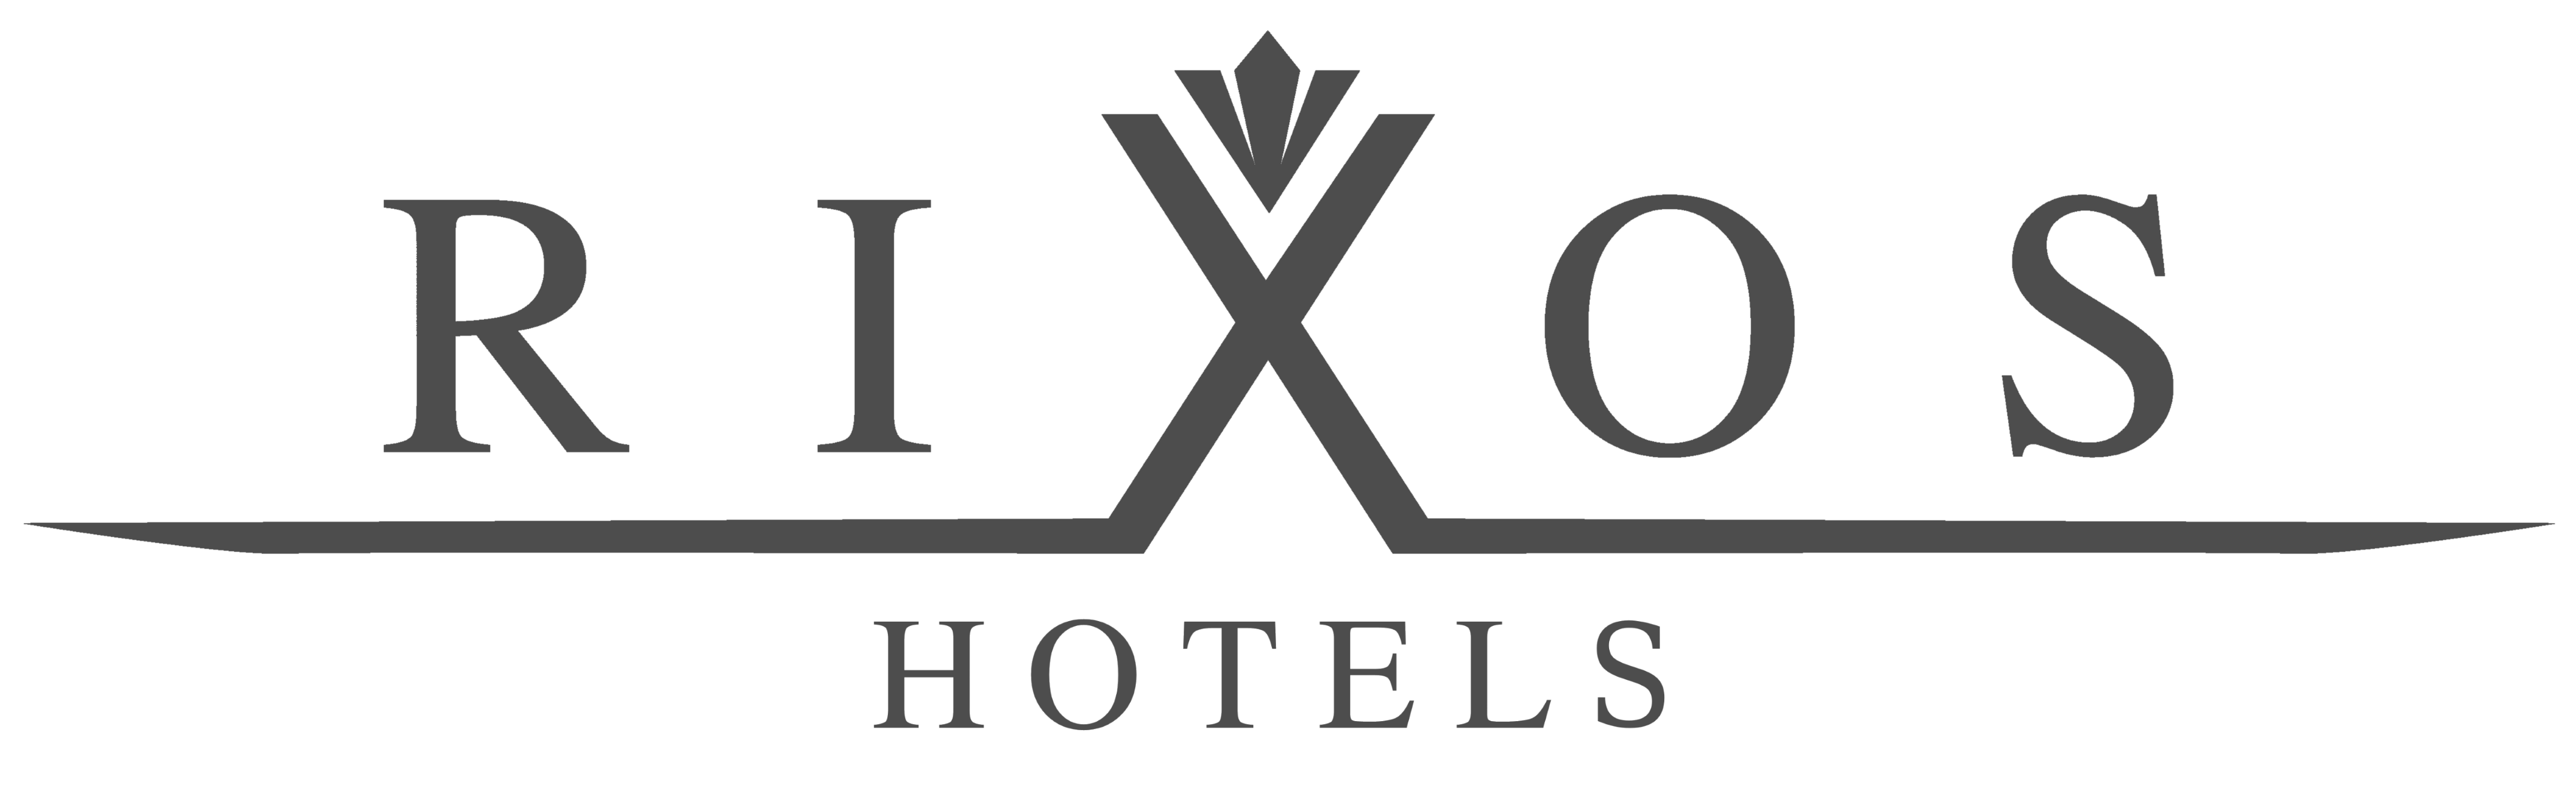 Rixos hotels logo png #41806